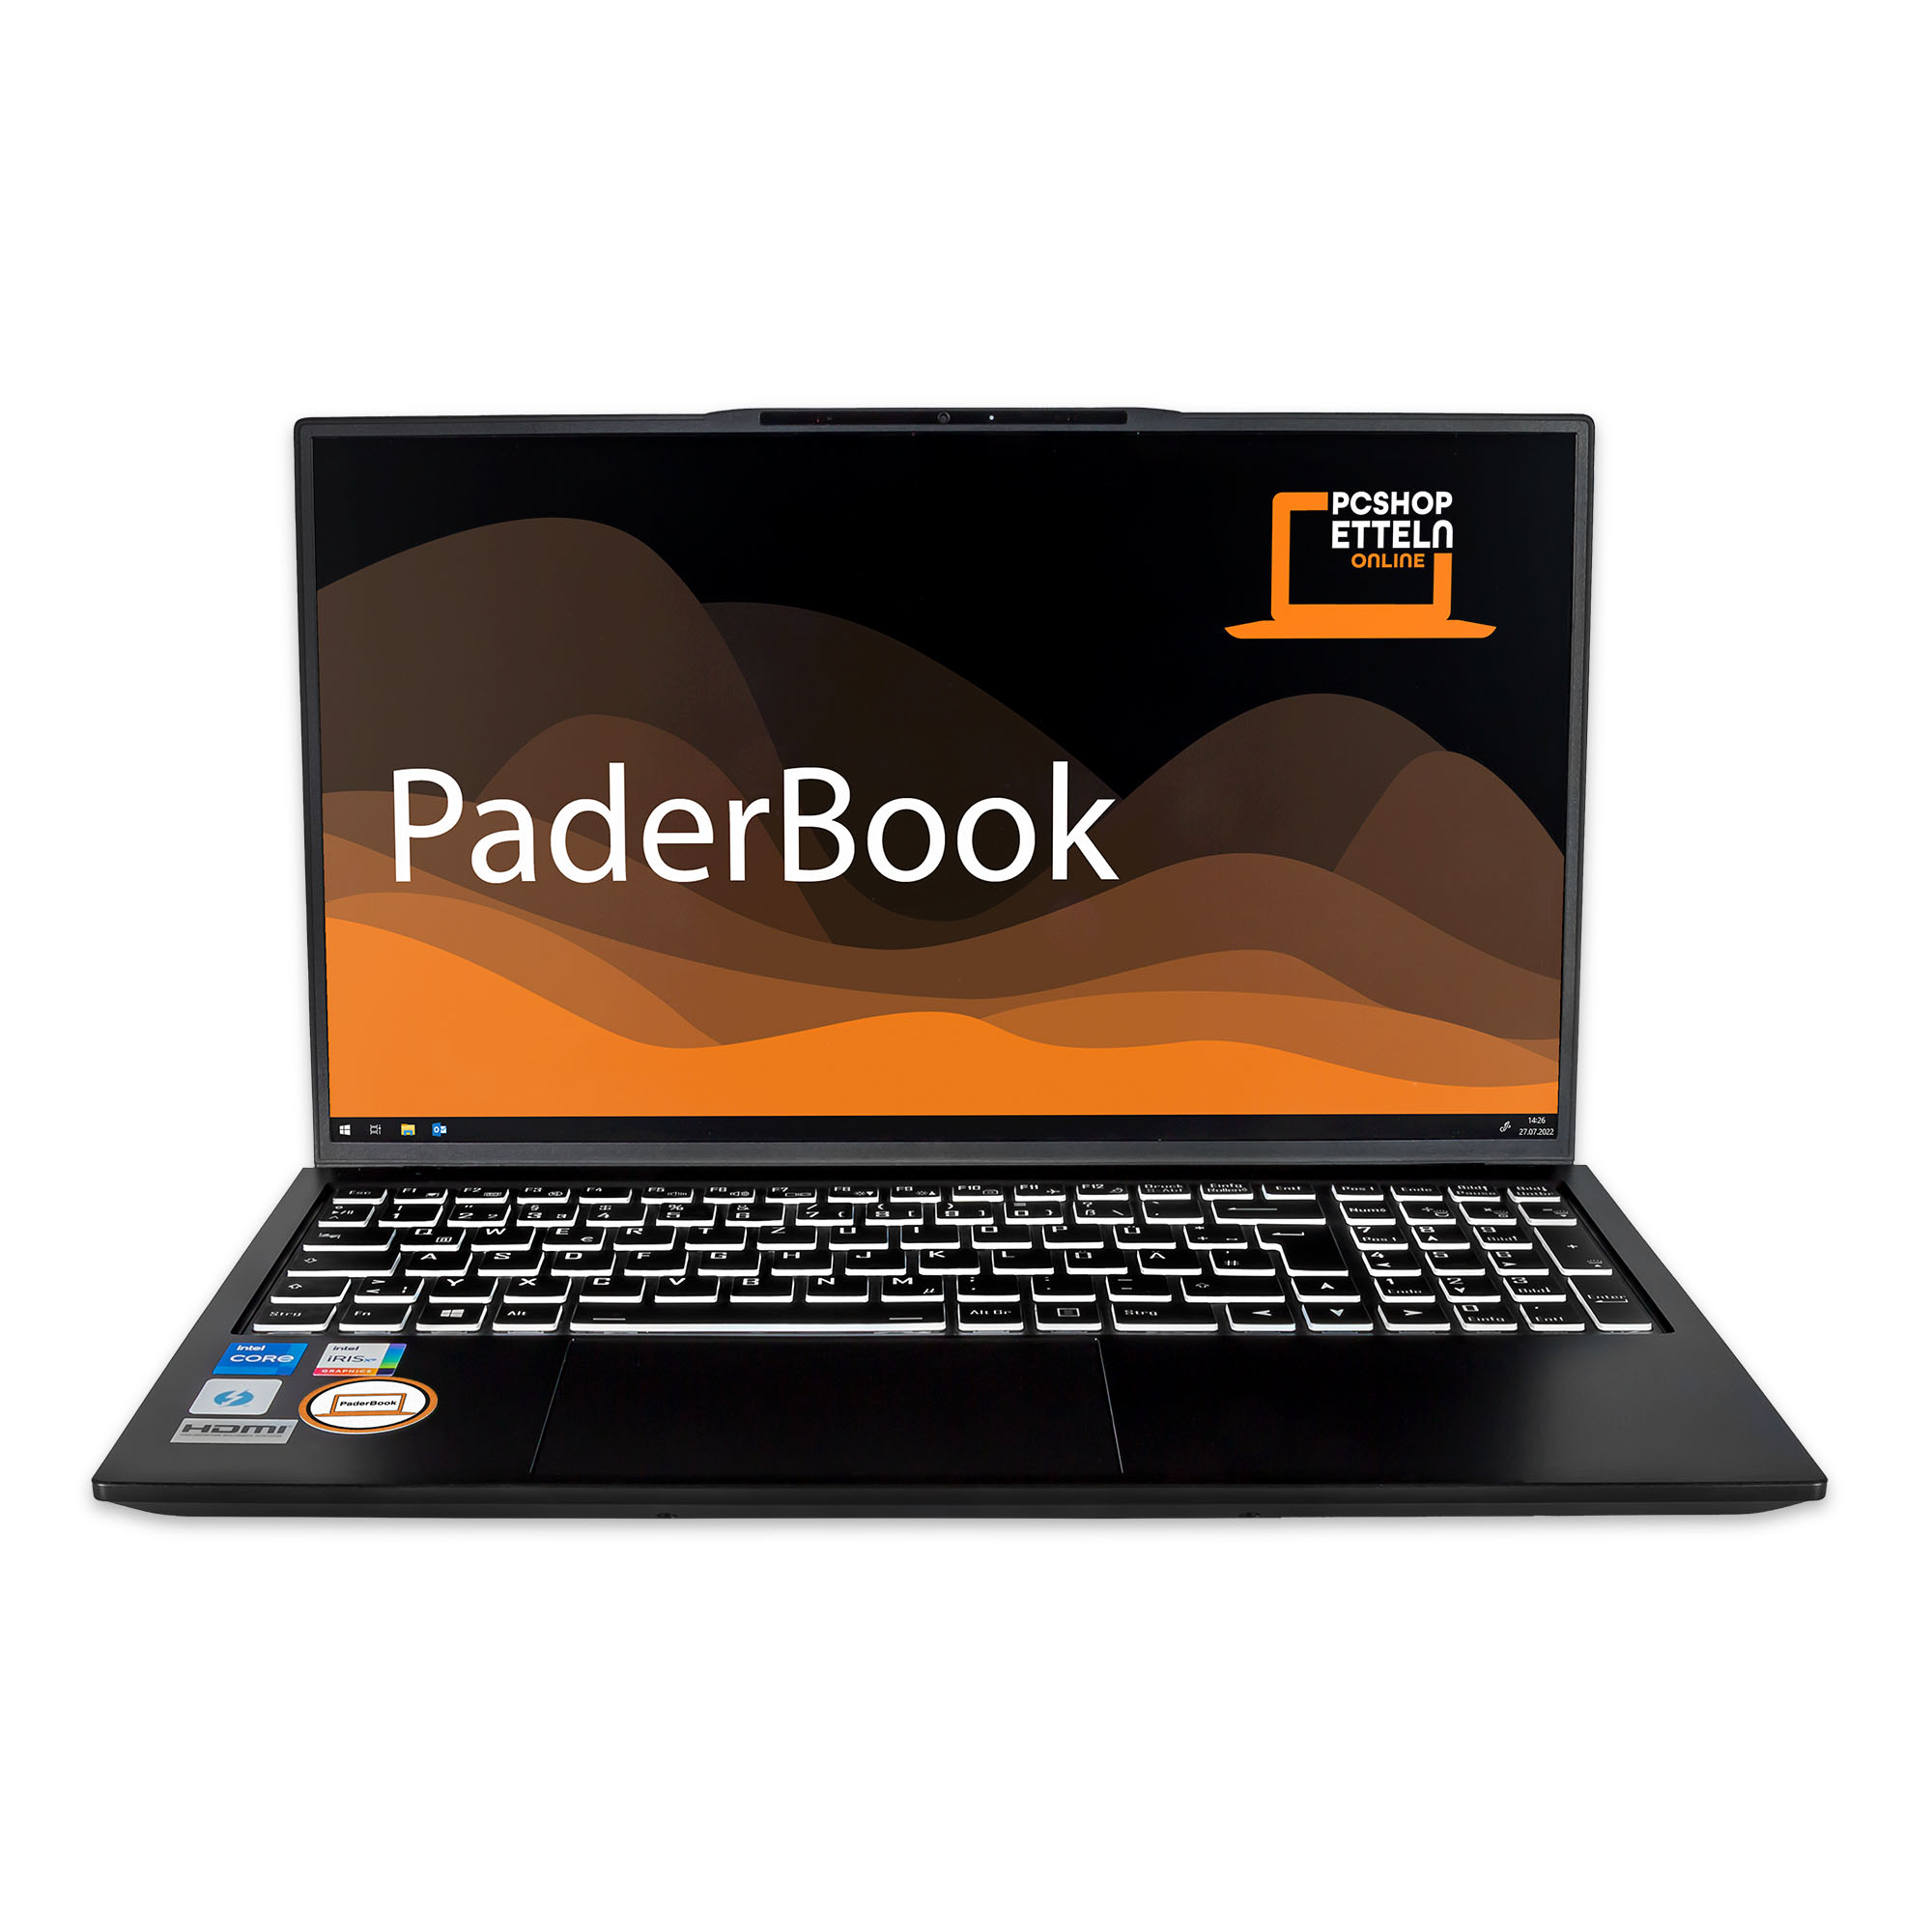 installiert aktiviert, Notebook Schwarz und Display, i75, Pro, 8 4000 PADERBOOK RAM, Plus 15,6 GB SSD, fertig Zoll GB mit 2021 Office